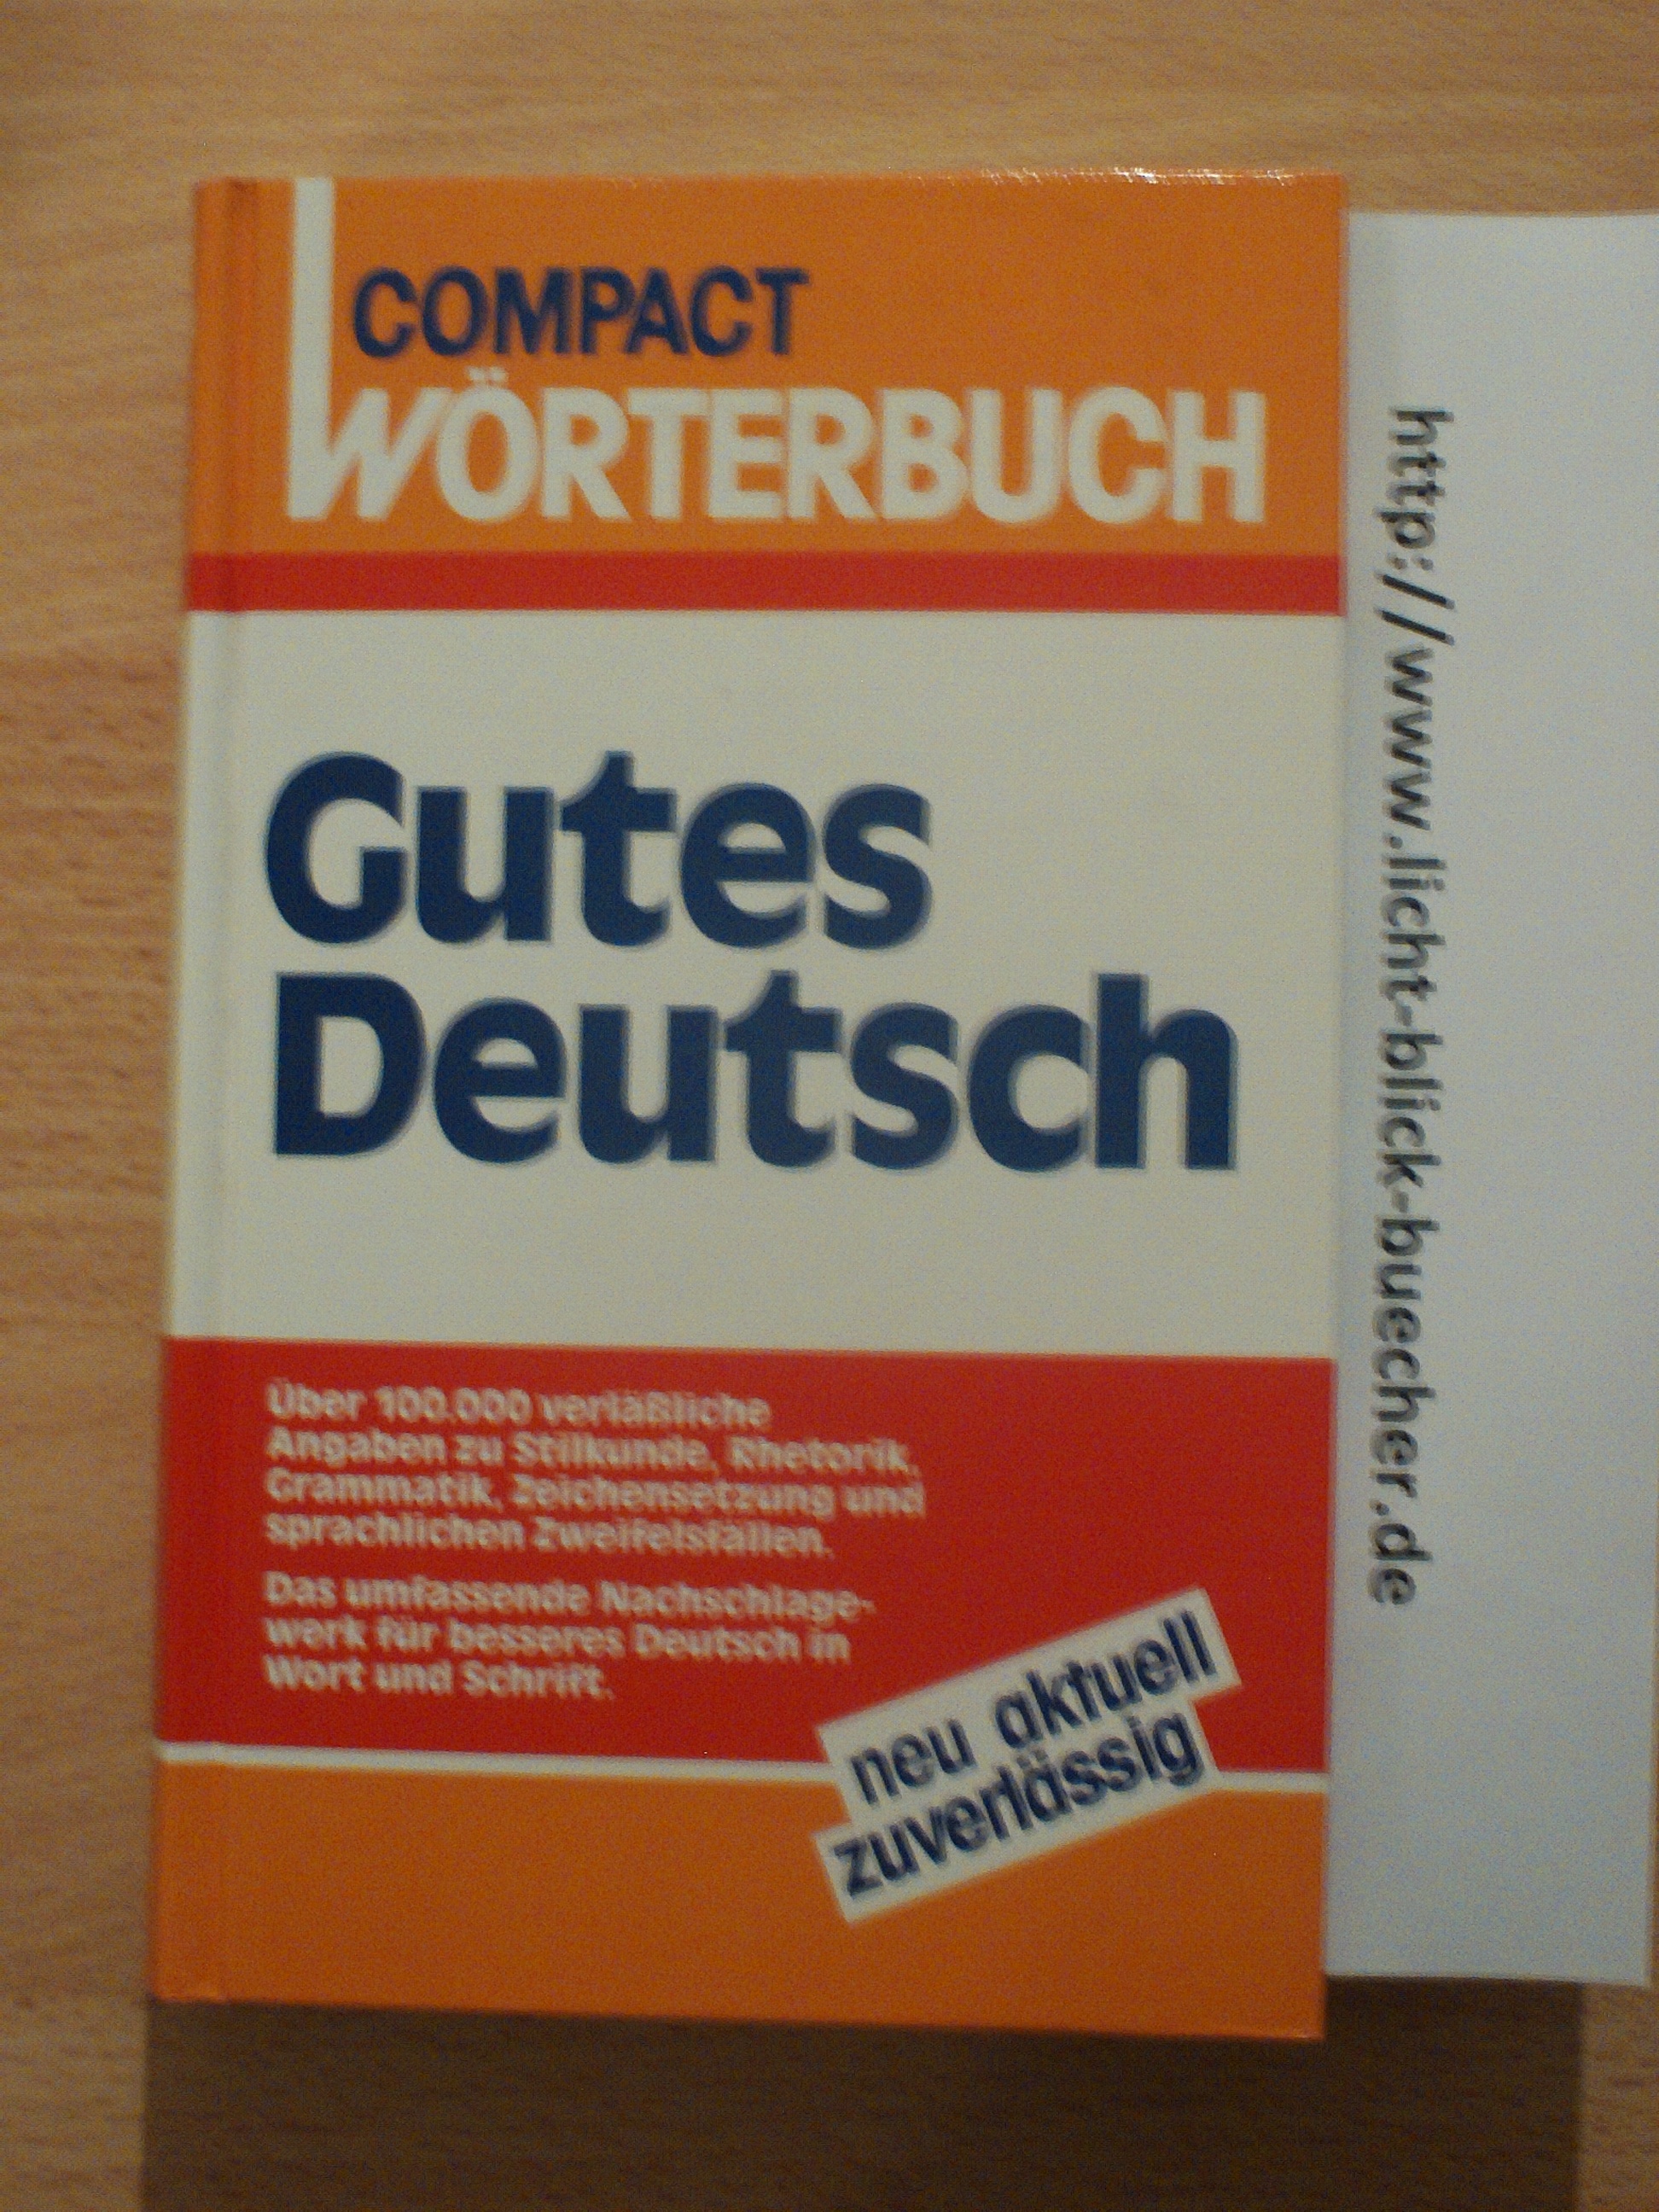 Compact Woerterbuch : Gutes Deutsch....Antonia Lang-Kleefeld